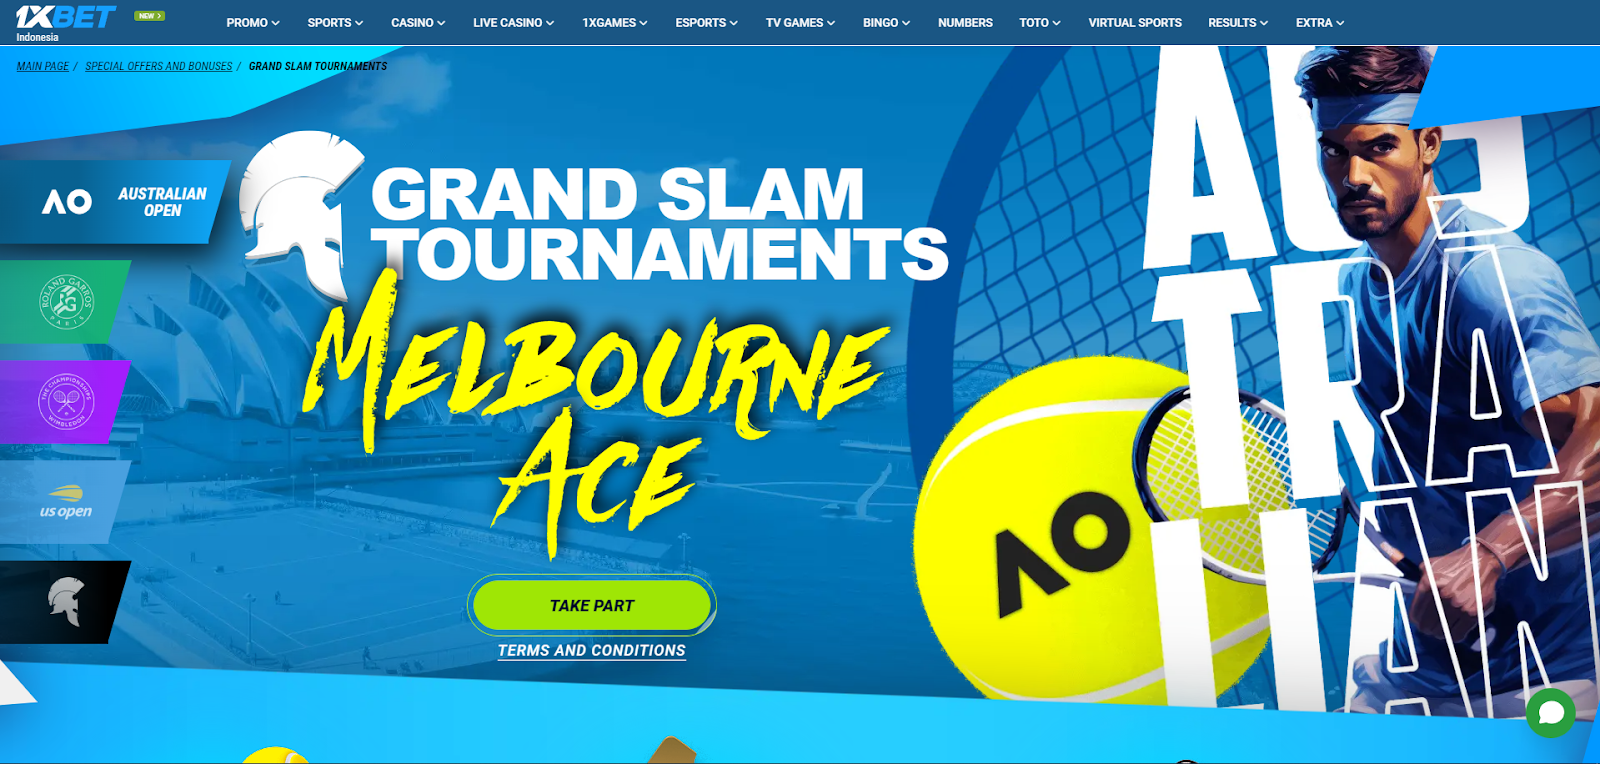 Promosi Turnamen Grand Slam untuk Taruhan Tenis dari 1xBet Indonesia